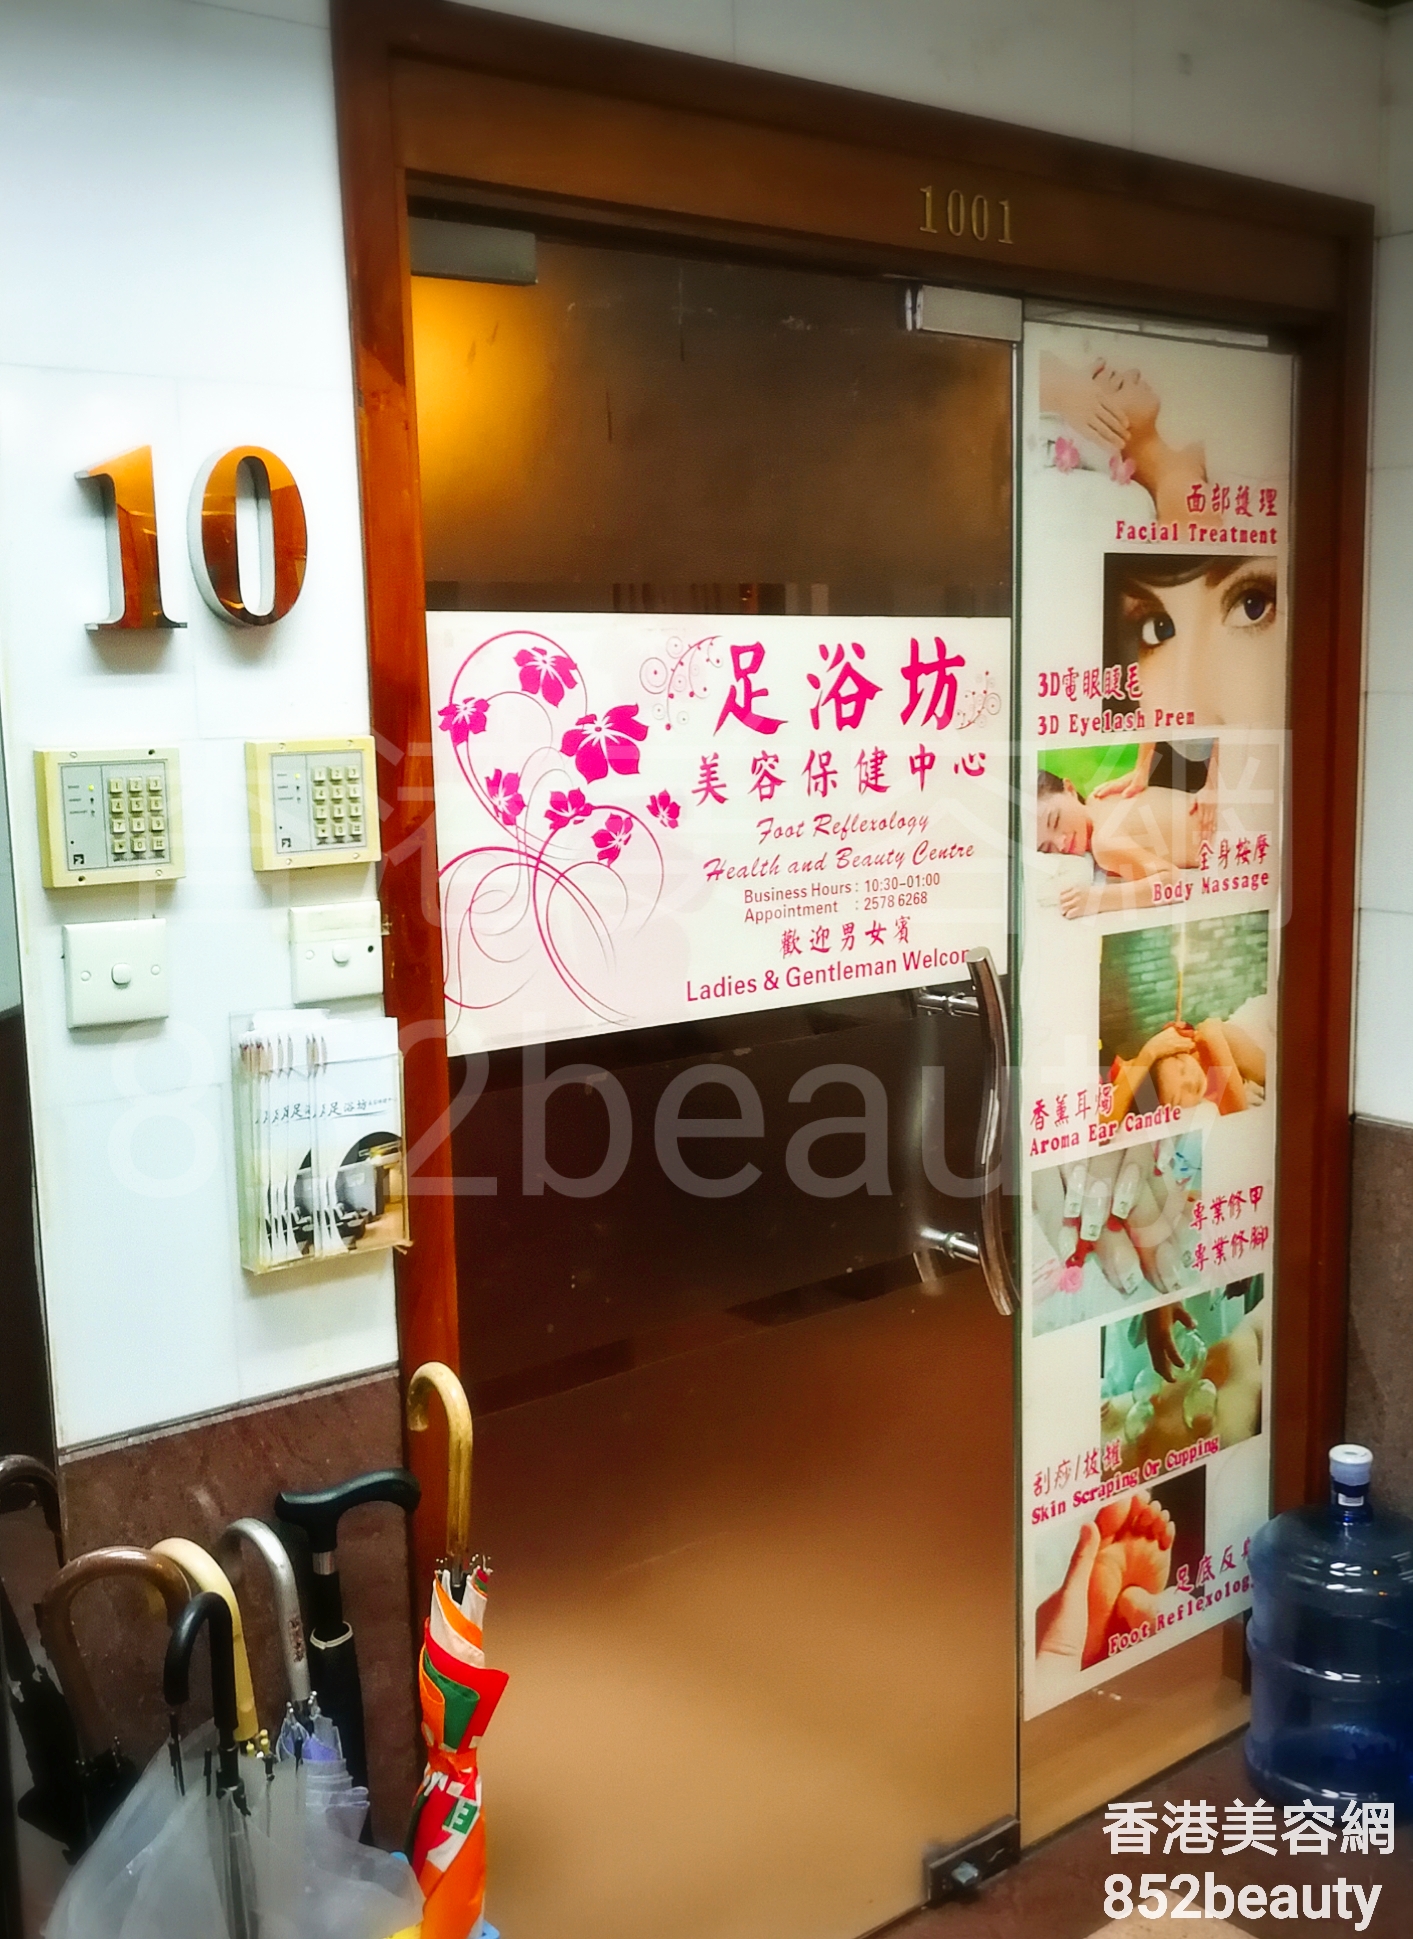 香港美容網 Hong Kong Beauty Salon 美容院 / 美容師: 足浴坊 美容保健中心